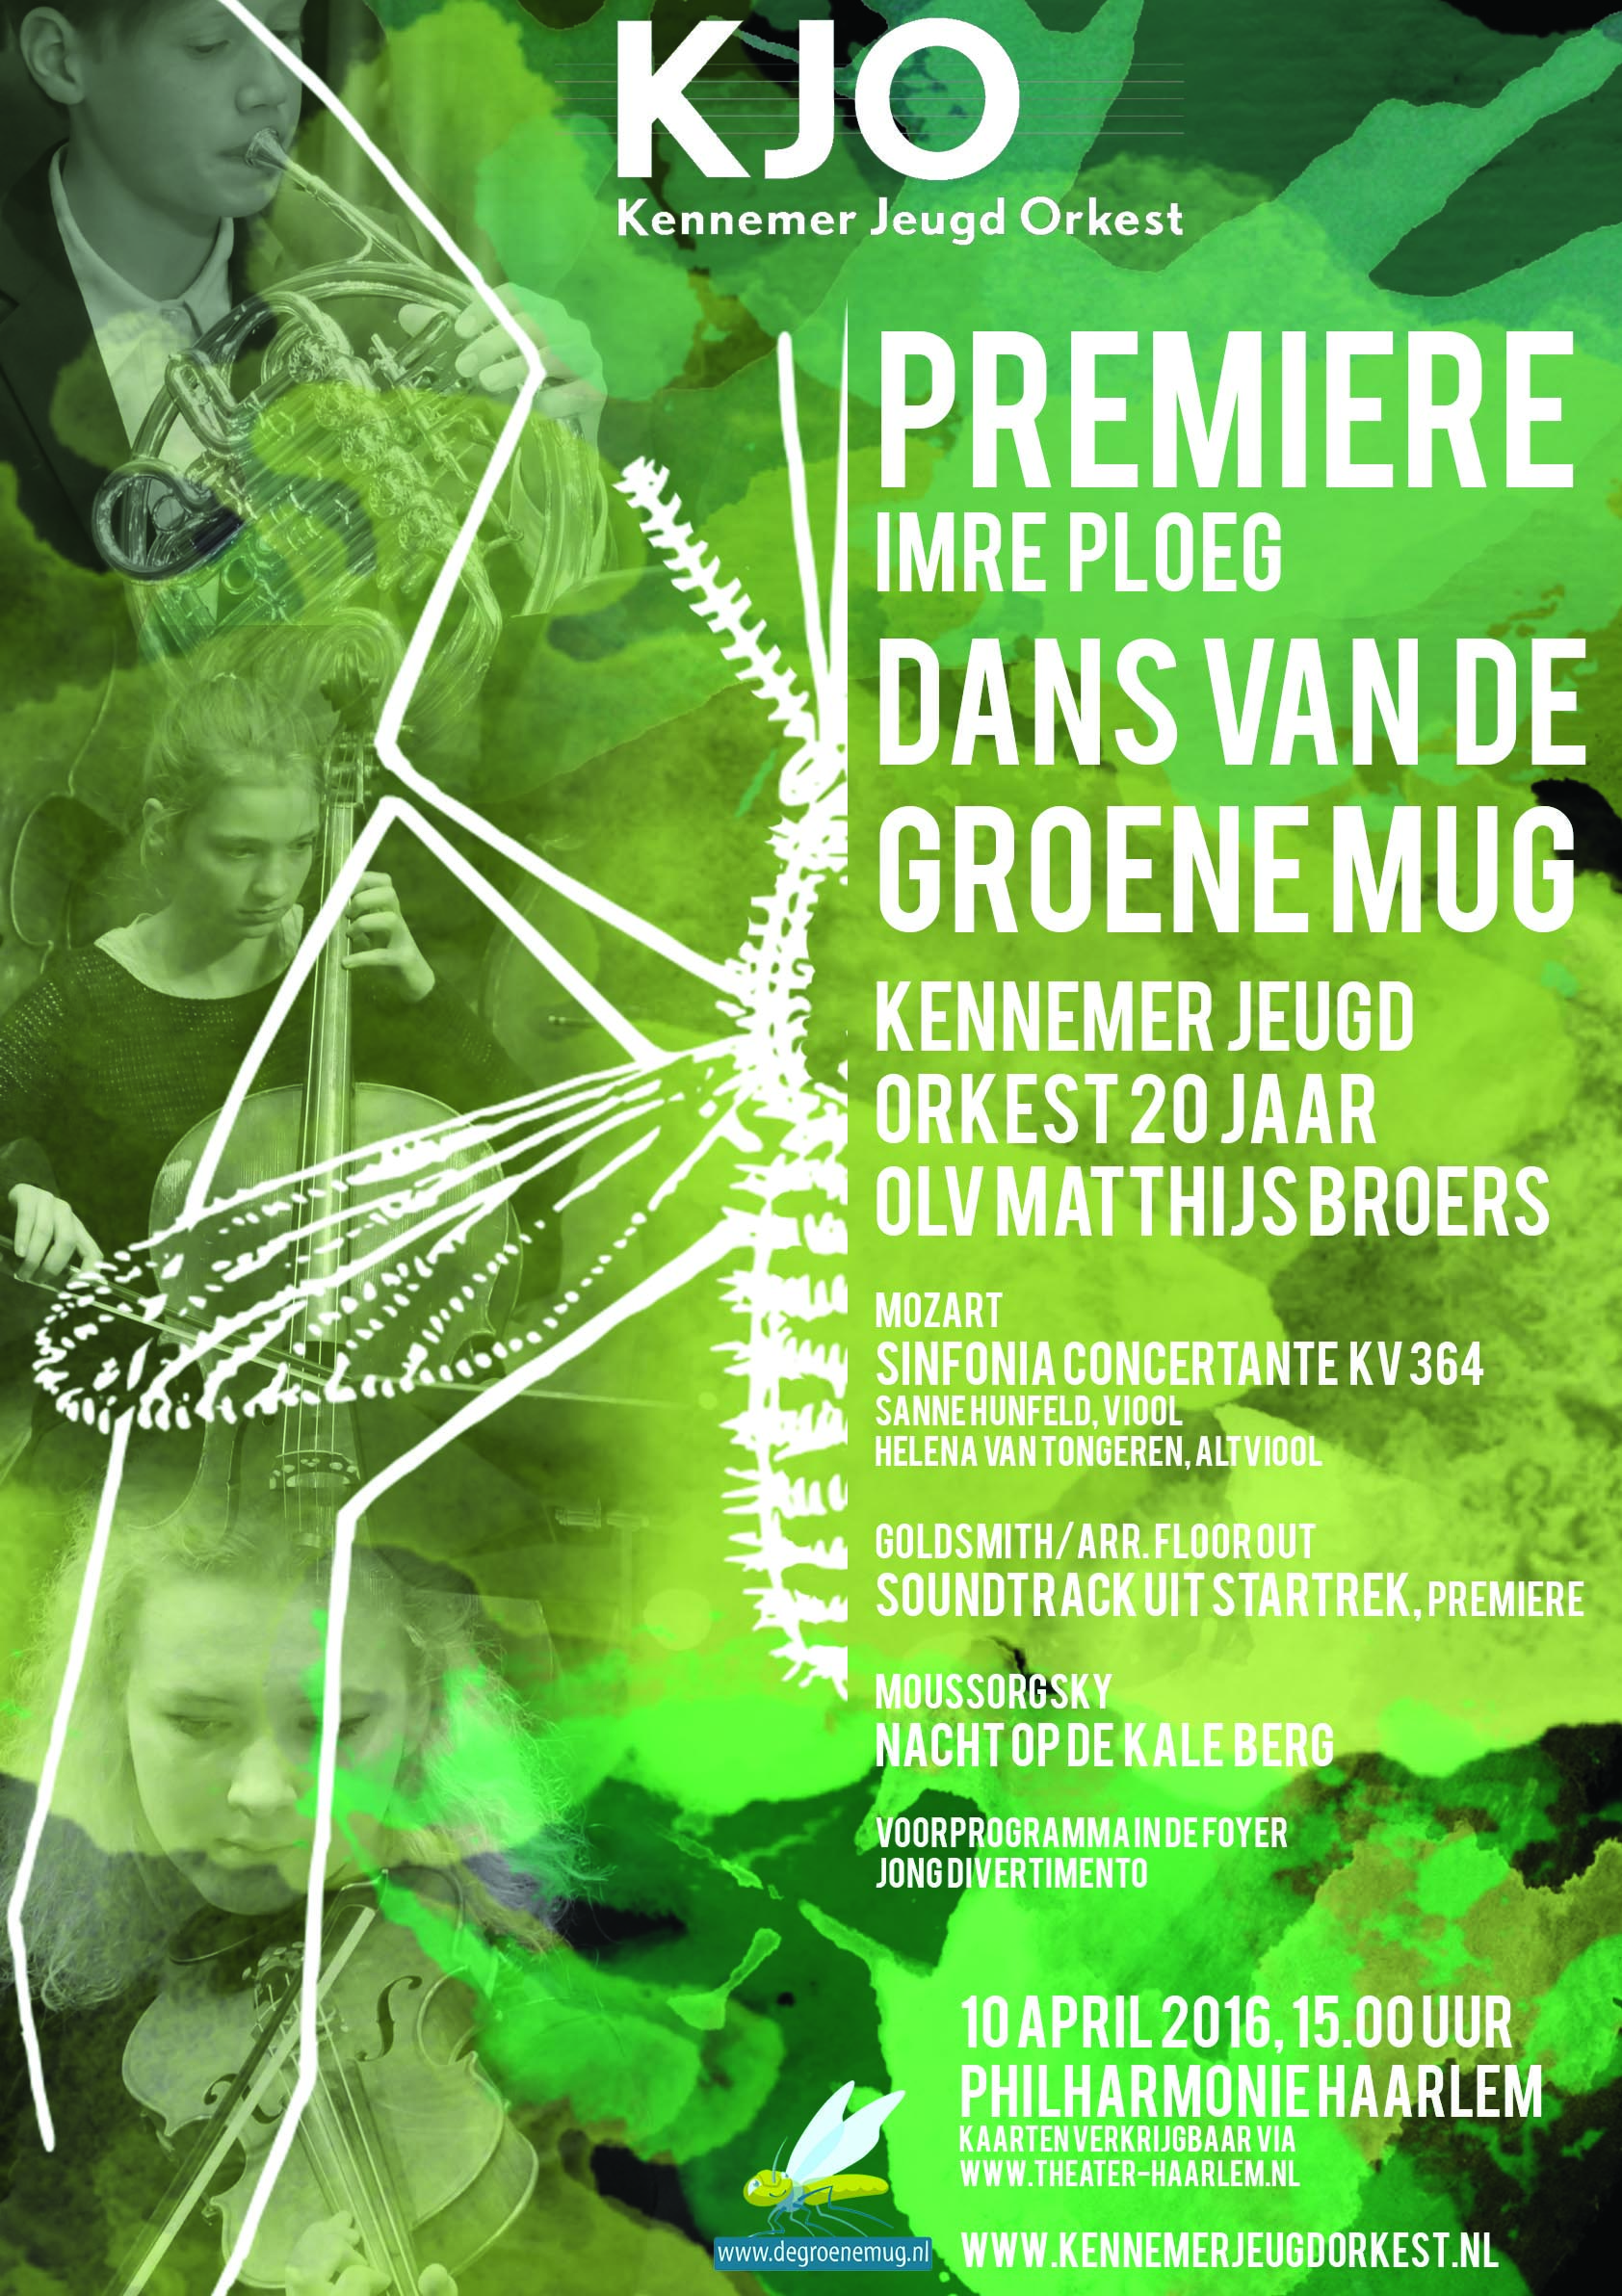 Voorjaarsconcert 2016 "Dans van de groene mug"